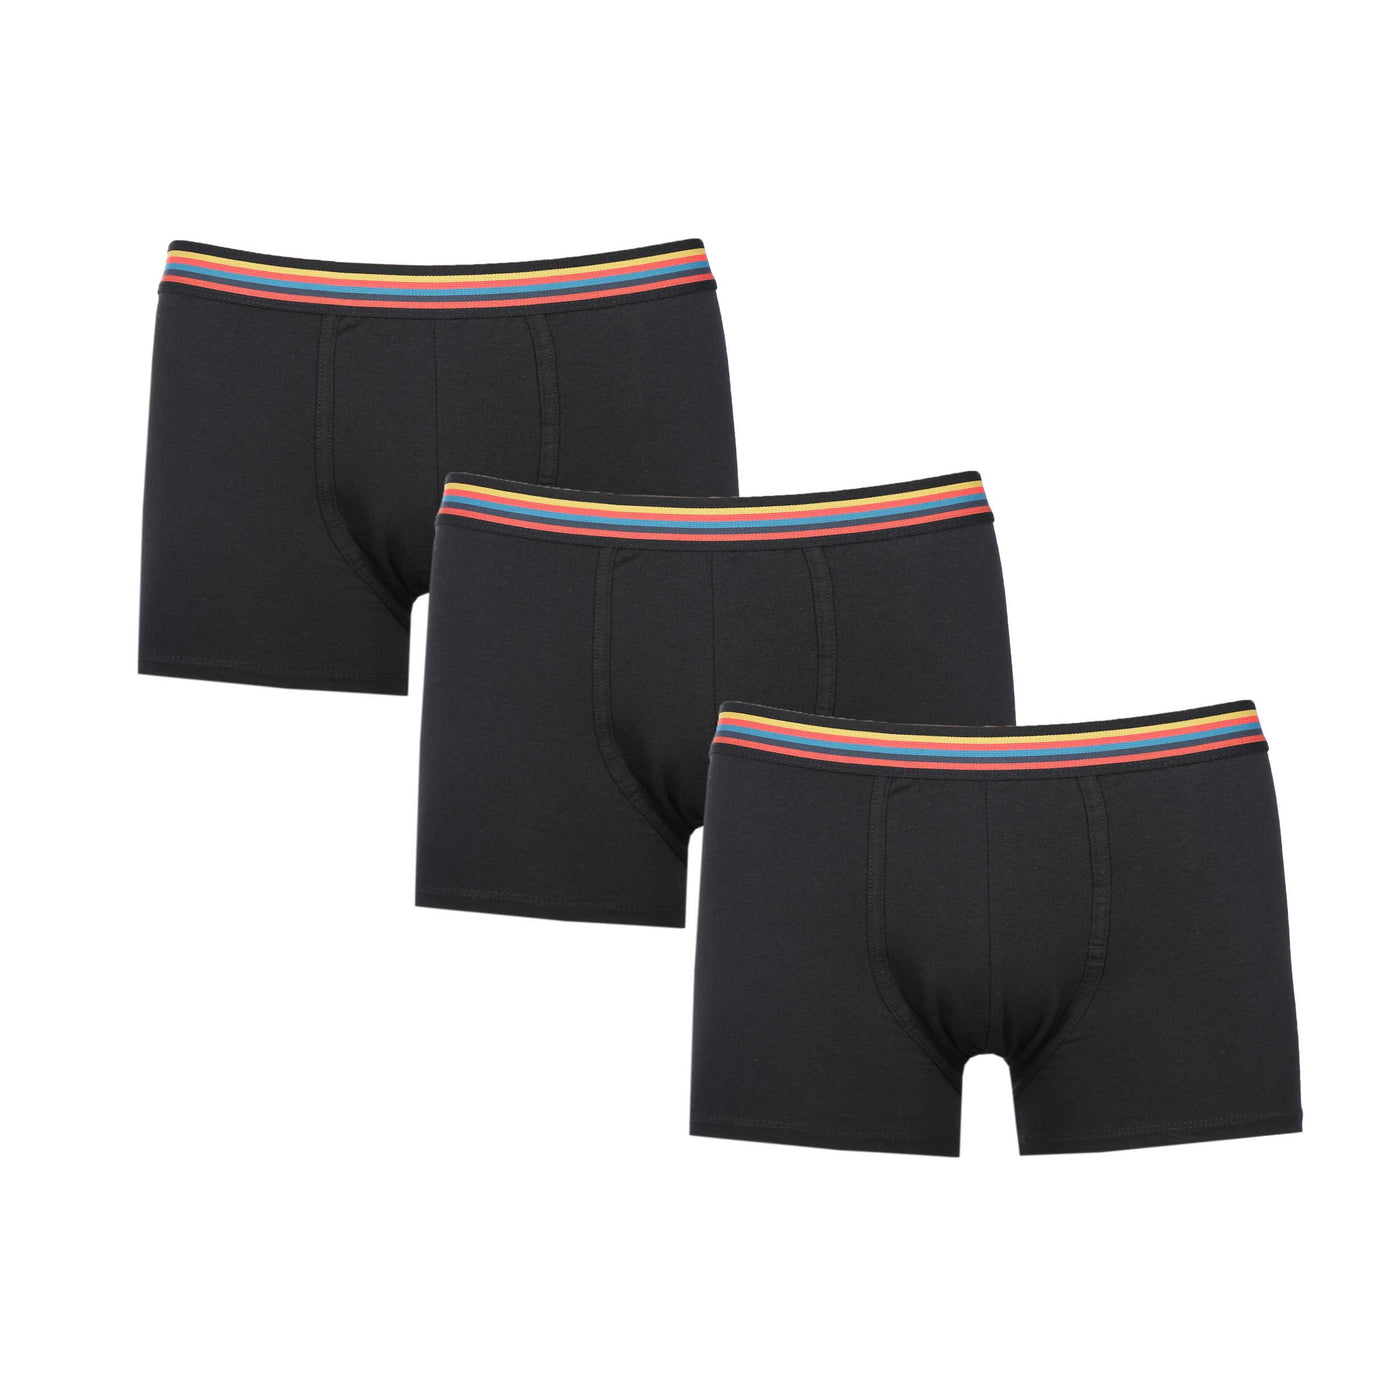 Paul Smith Trunk 3 Pack Underwear in Black